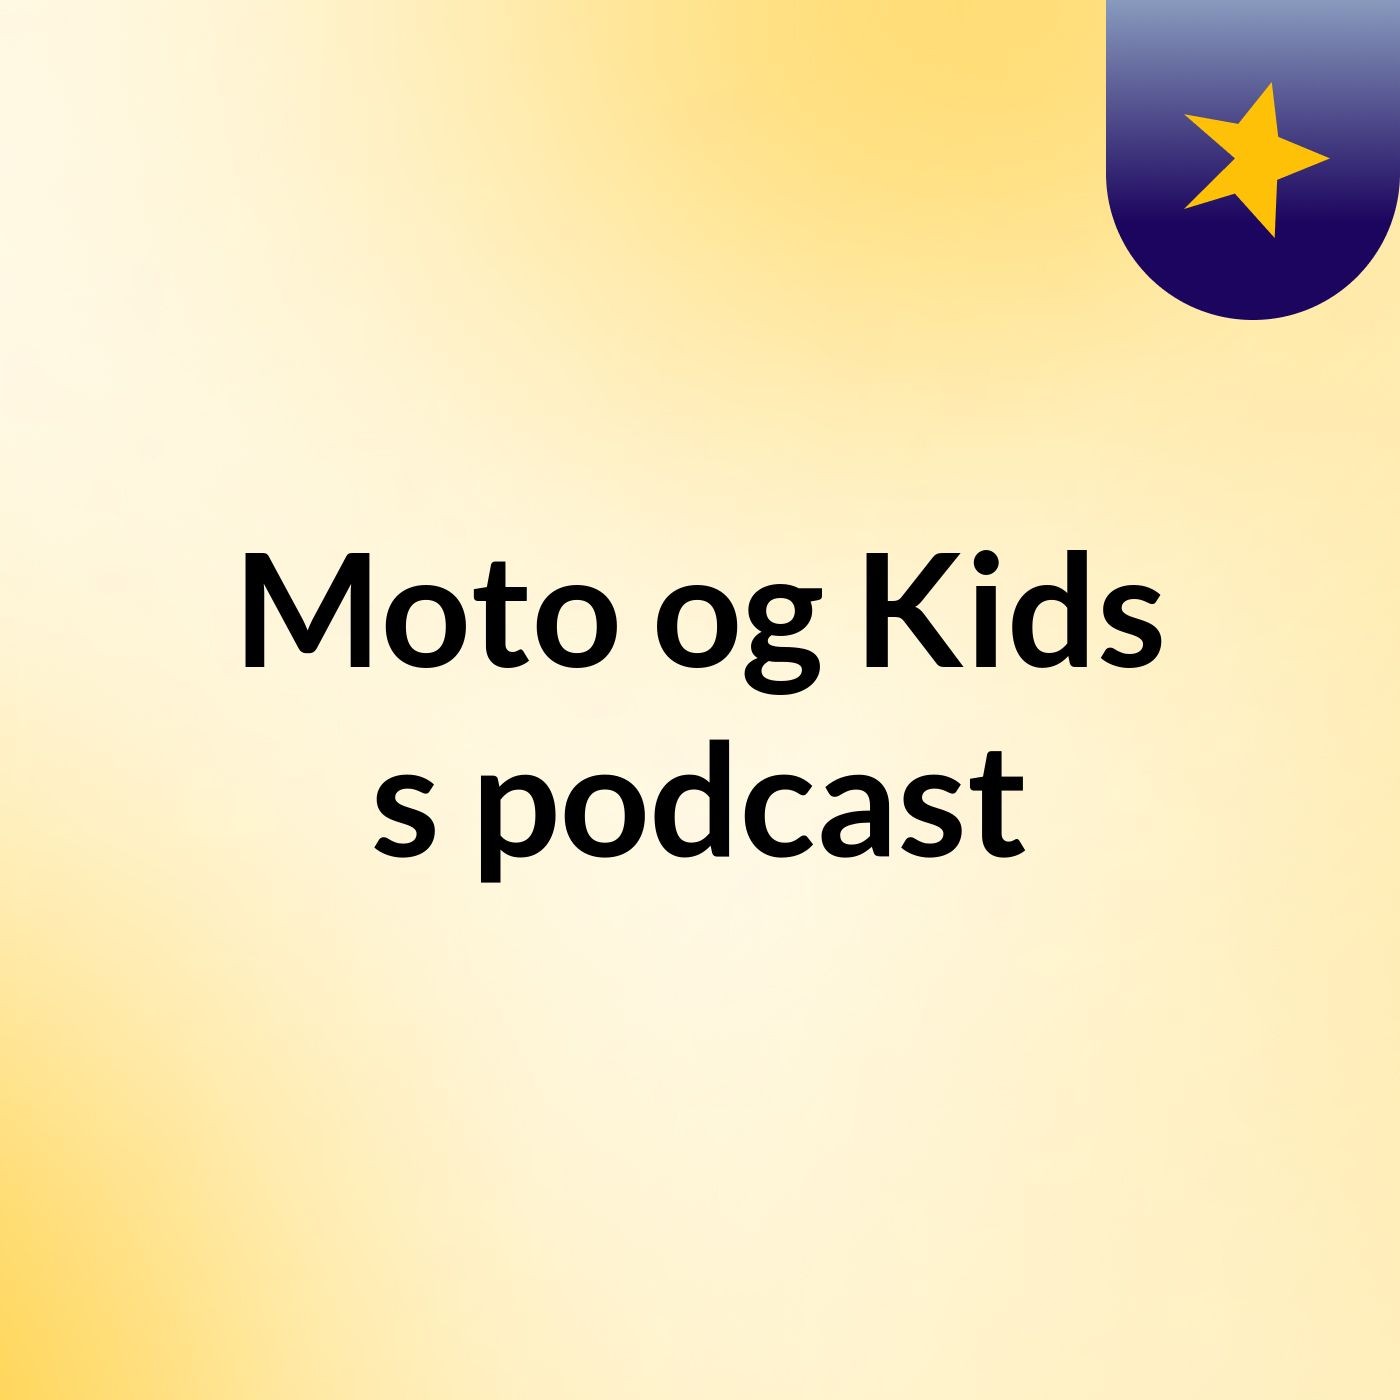 Moto og Kids's podcast